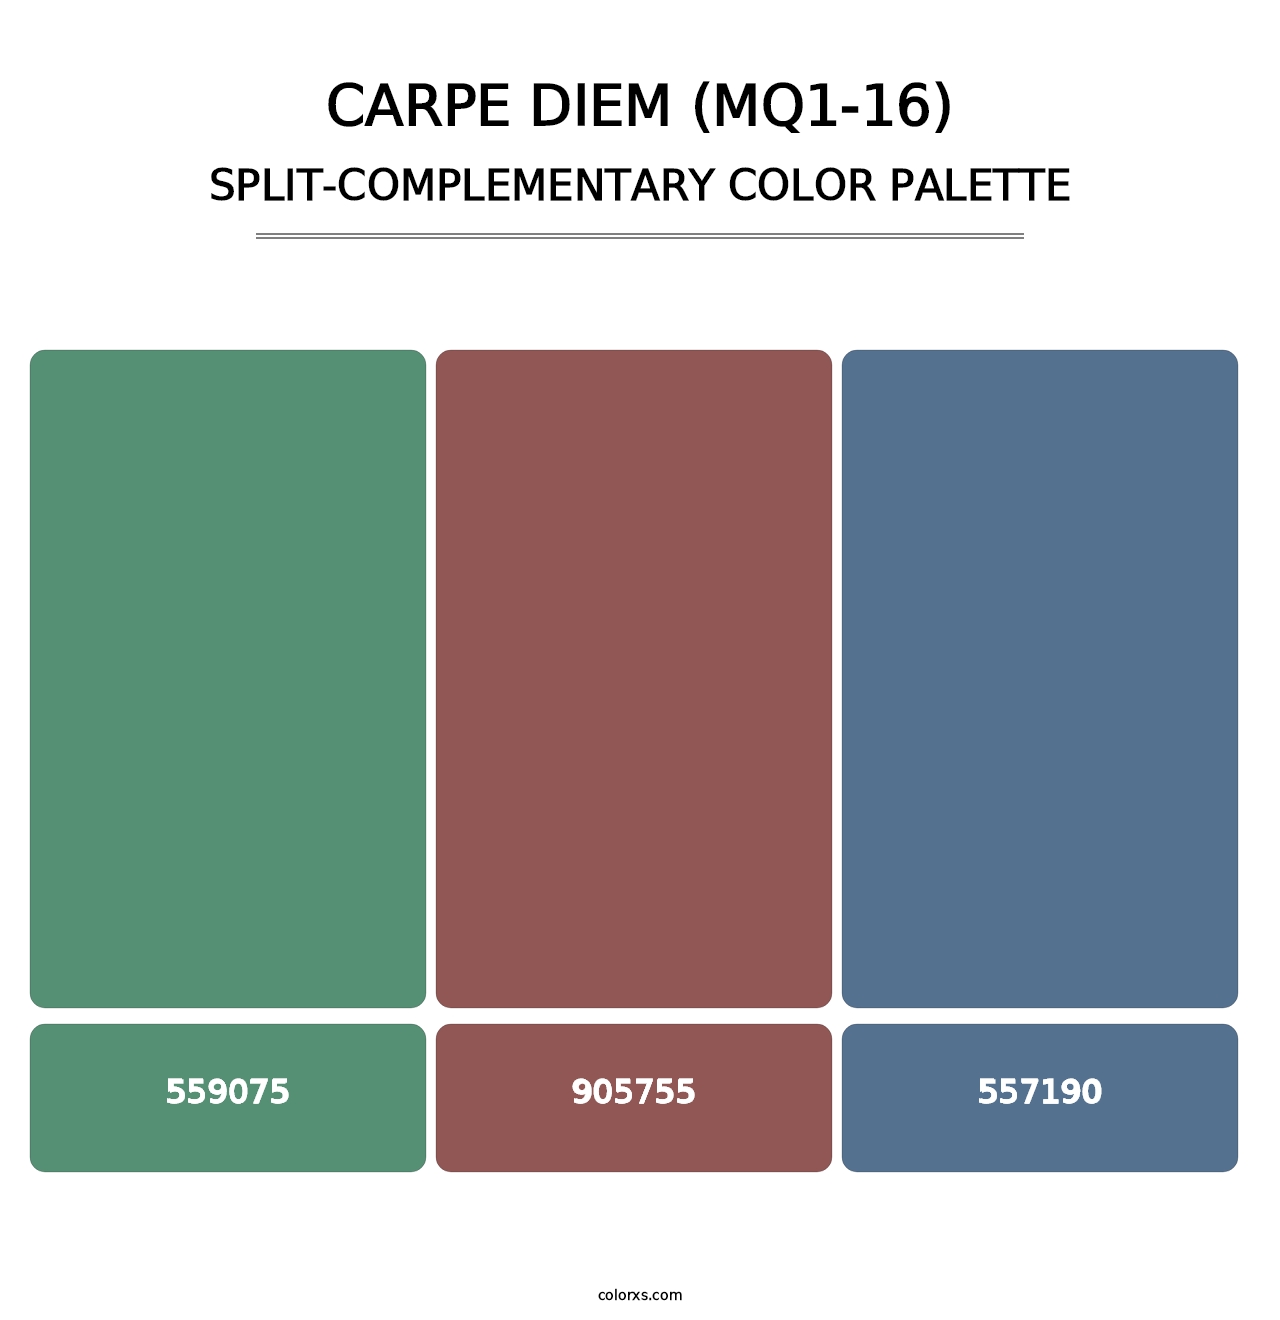 Carpe Diem (MQ1-16) - Split-Complementary Color Palette